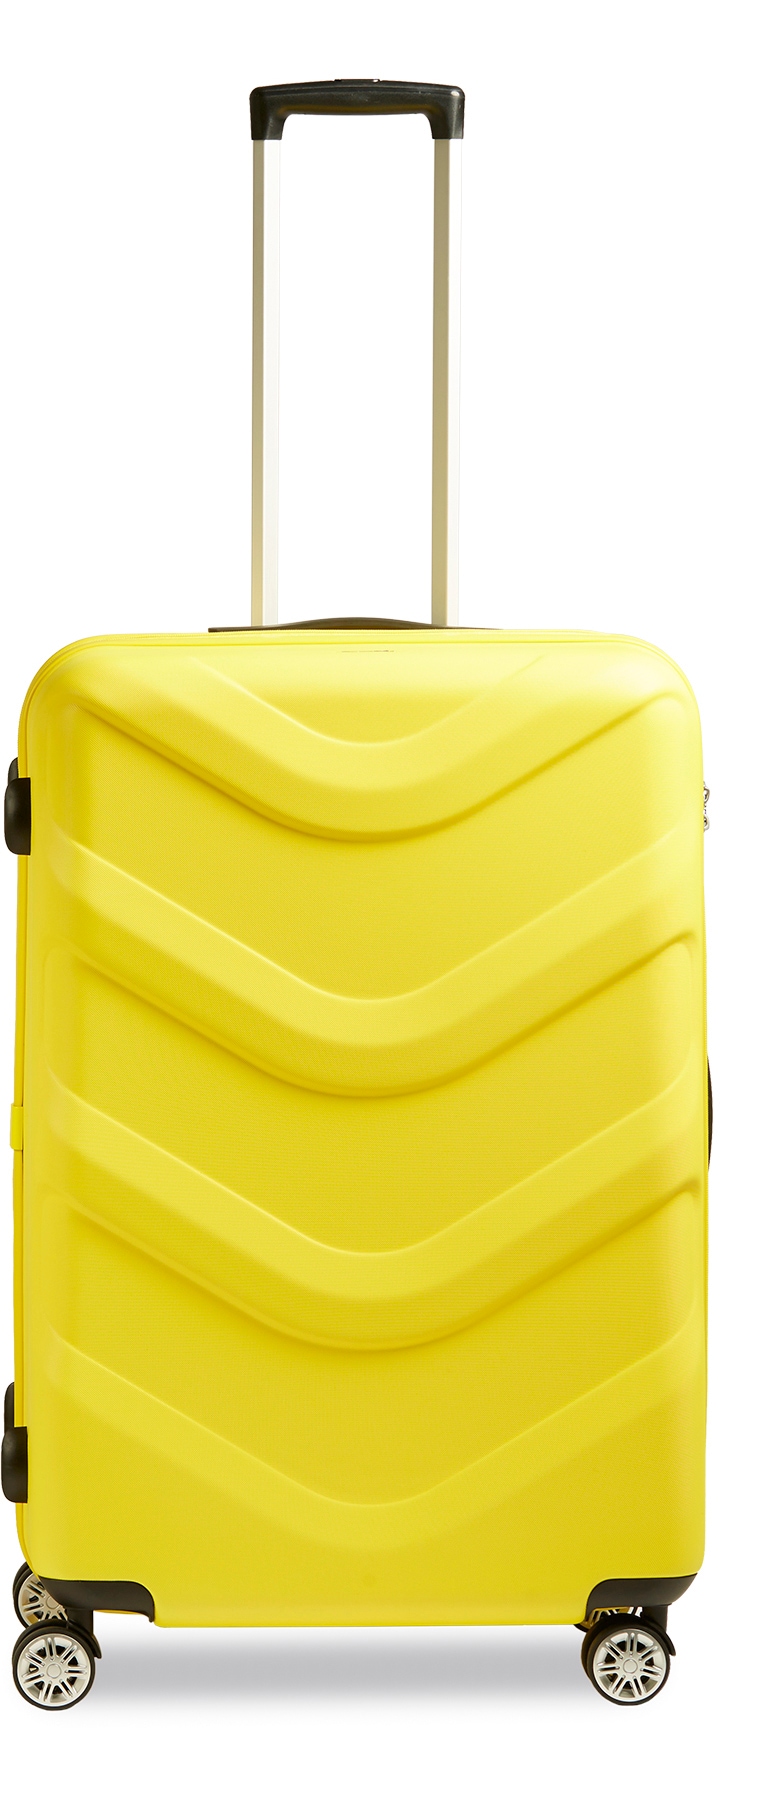 Bequem Herren Koffer & Reisegepäck online kaufen bei OTTO